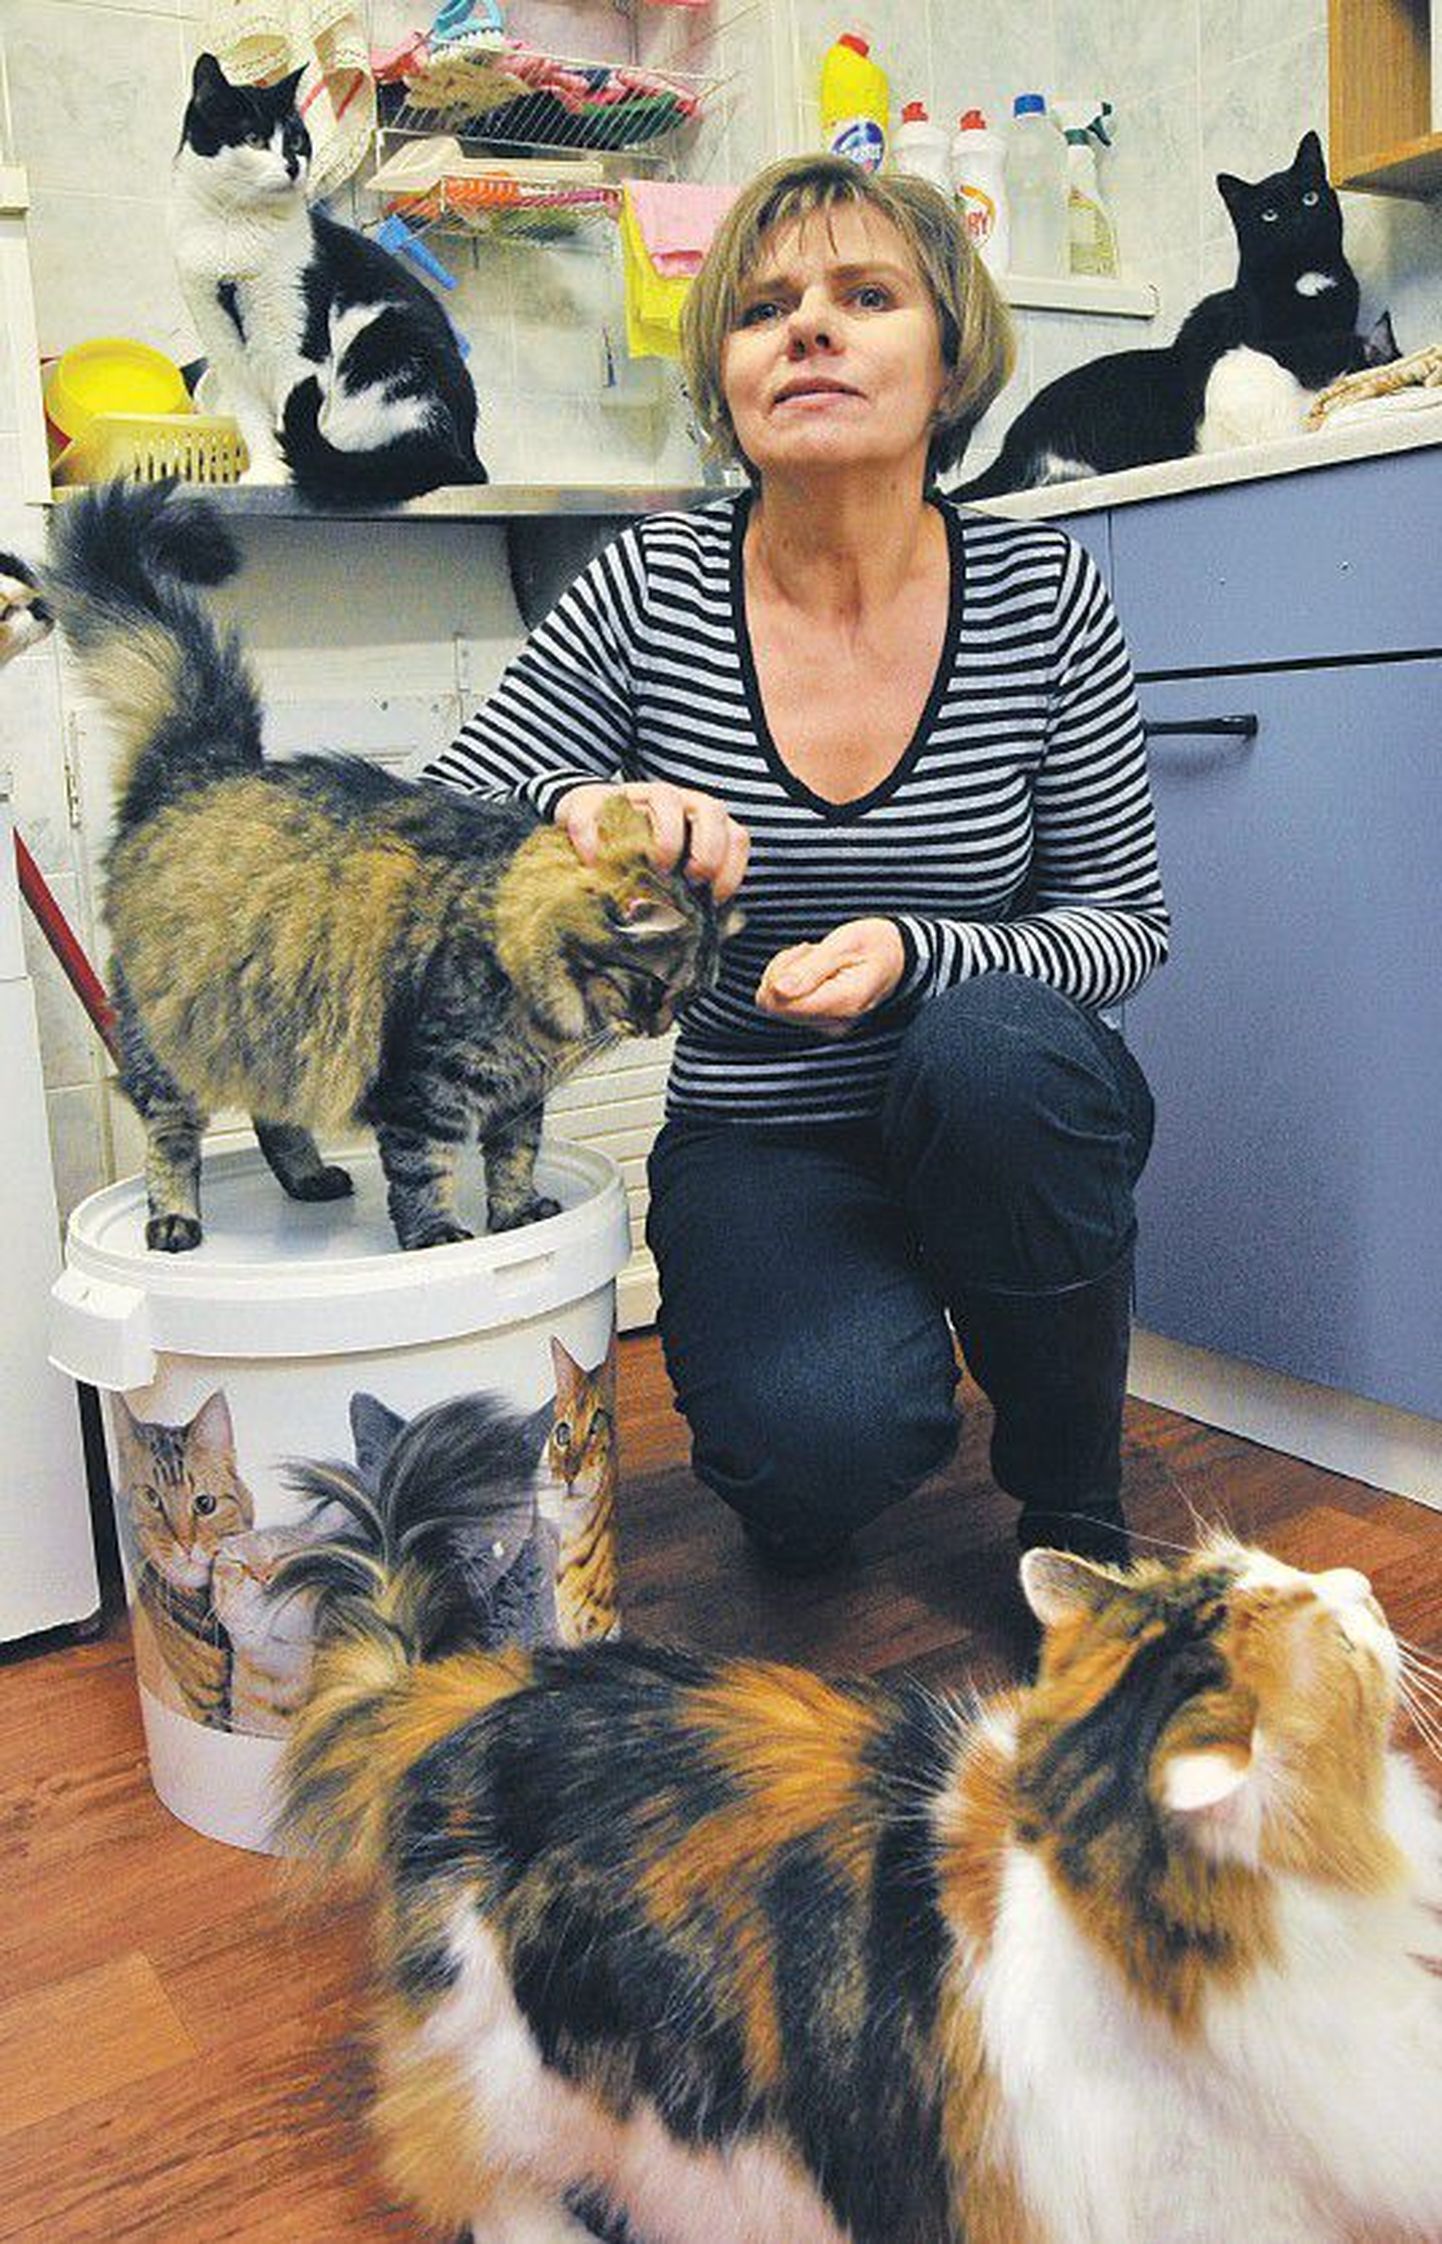 Учредитель и член правления приюта для кошек Кайя Кихо вот уже много лет целыми днями просиживает в подвале дома на улице Теразе в Кадриорге, где живут от 50 до 80 кошек.